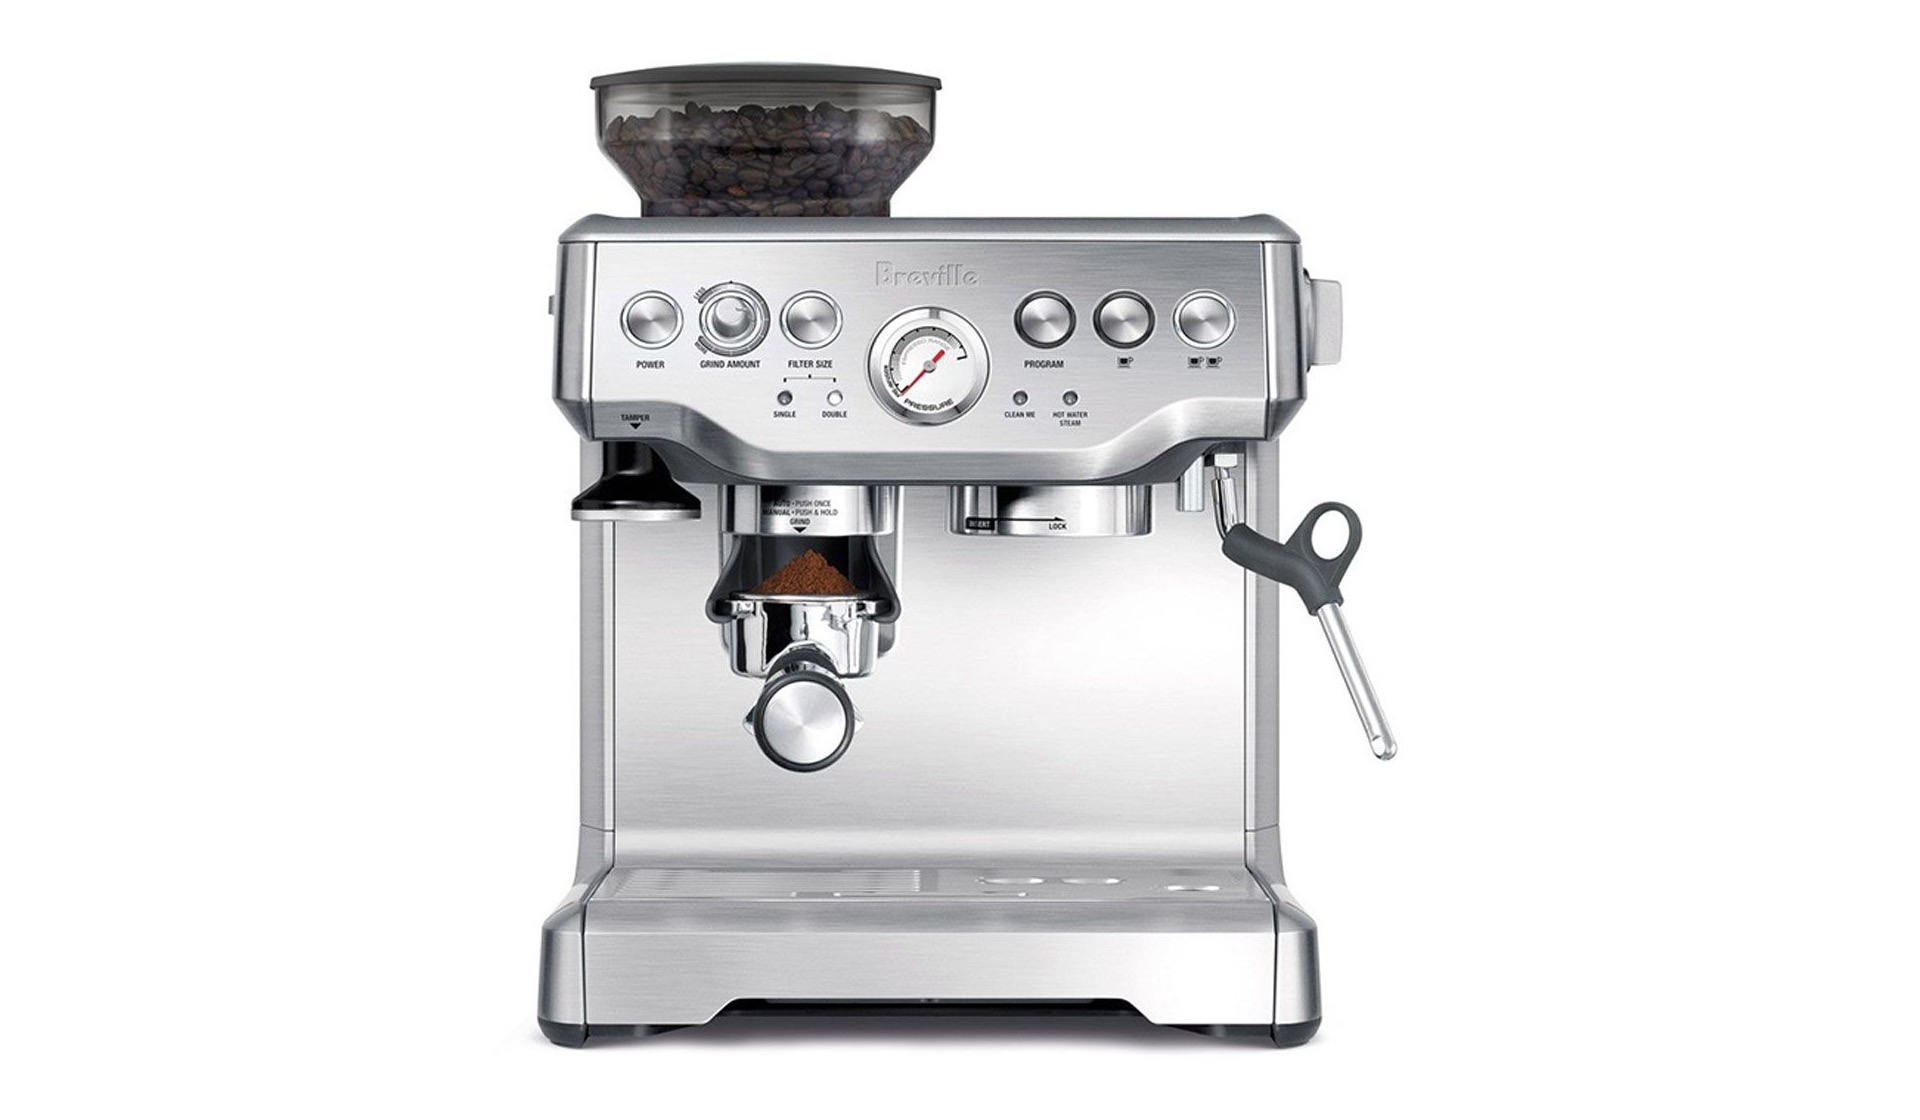 Breville Barista Express home espresso machine. ($596)